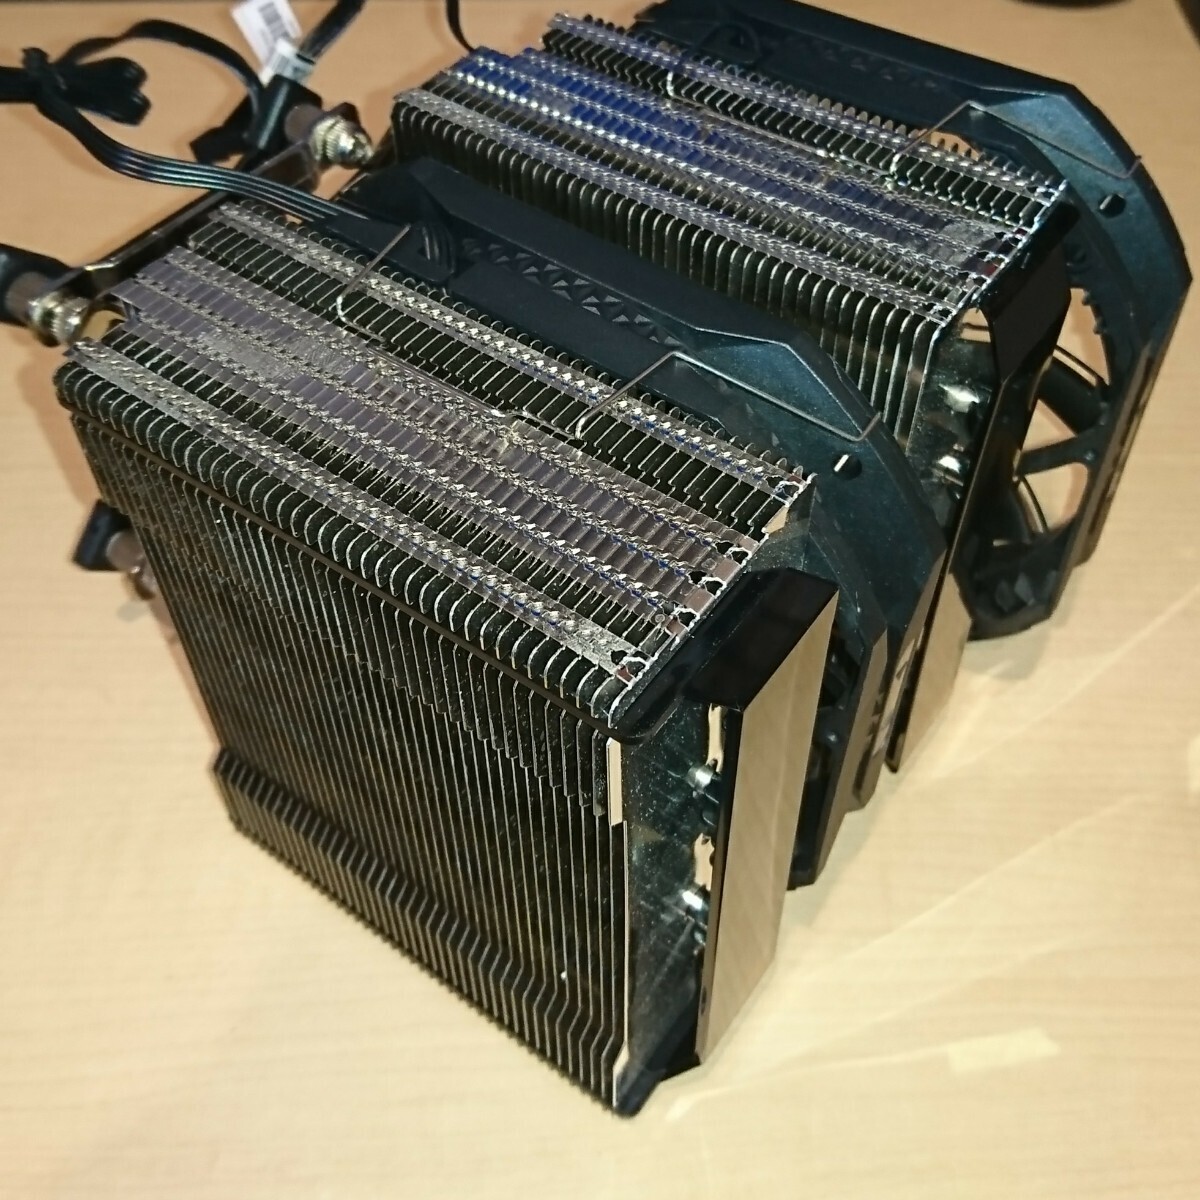 DeepCool ASSASIN III CPU cooler,air conditioner (O4191A)